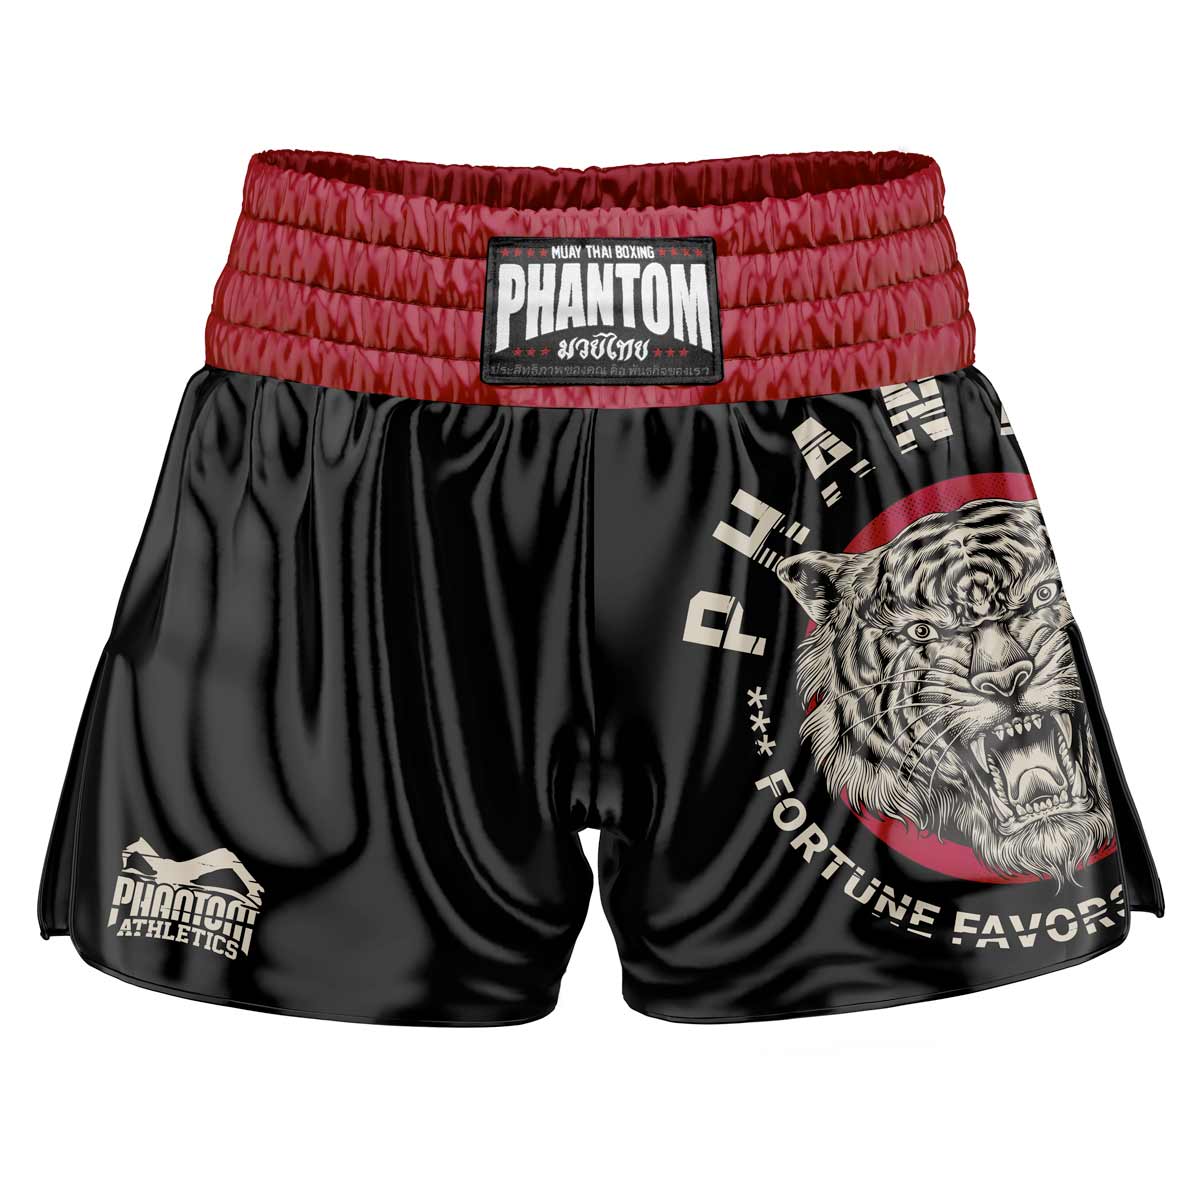 Mustad Phantom Muay Thai lühikesed püksid. Vana kooli satiinkangas ja meie populaarne Tiger Unit disain annavad teile originaalse Tai tunde. Tavapärases Phantom Athletics kvaliteedis. Ideaalne teie Tai poksi treeninguteks ja võistlusteks.